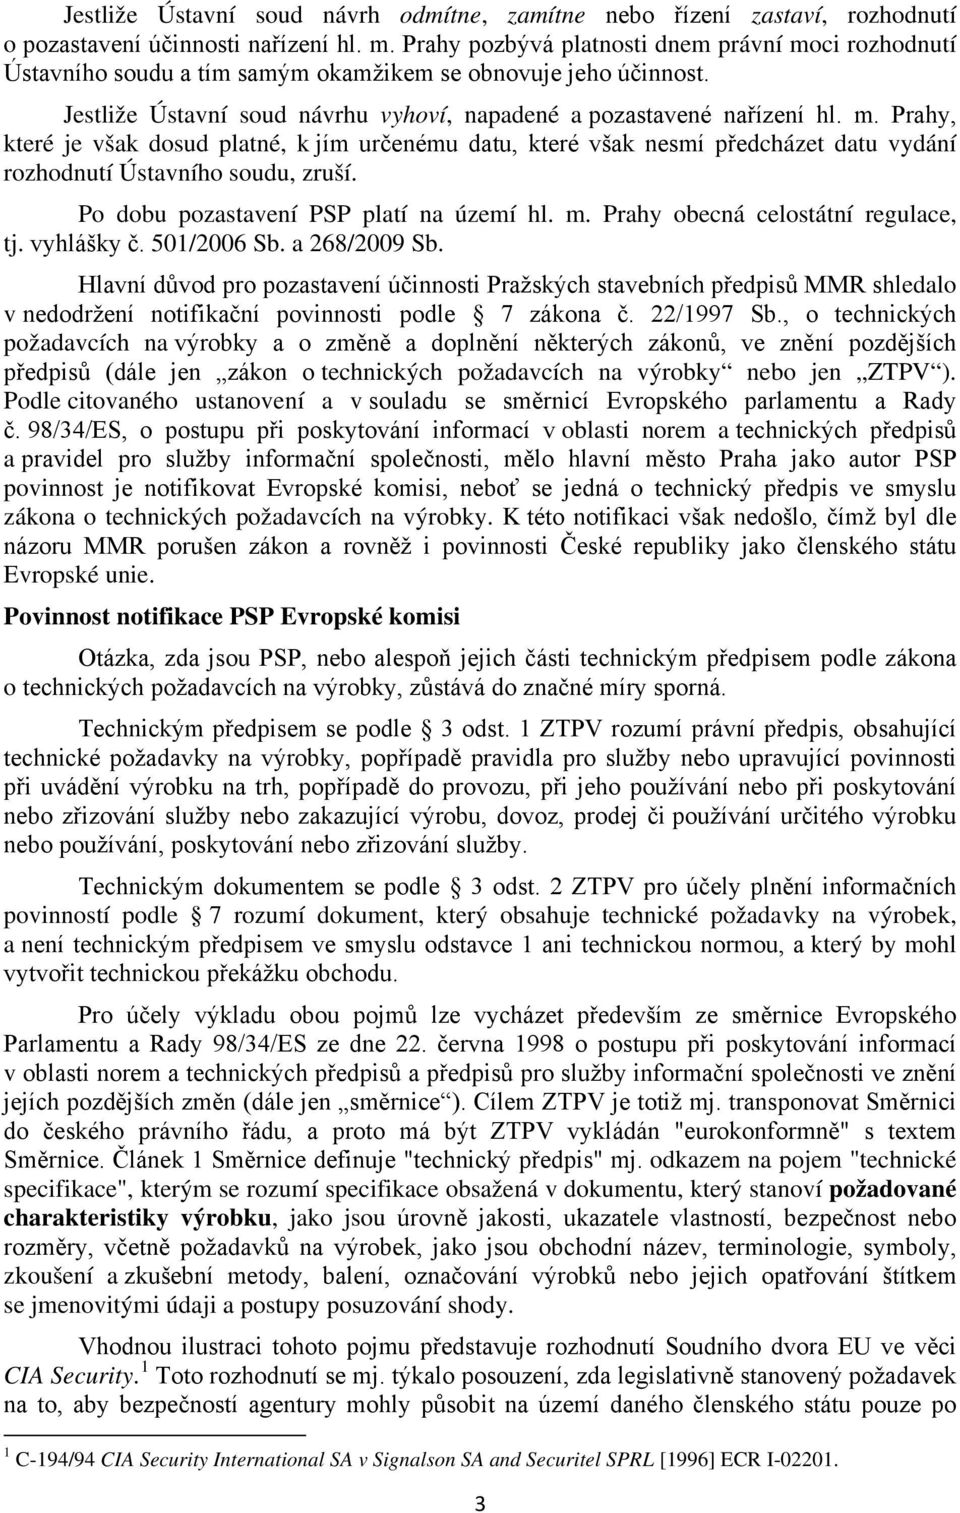 Po dobu pozastavení PSP platí na území hl. m. Prahy obecná celostátní regulace, tj. vyhlášky č. 501/2006 Sb. a 268/2009 Sb.